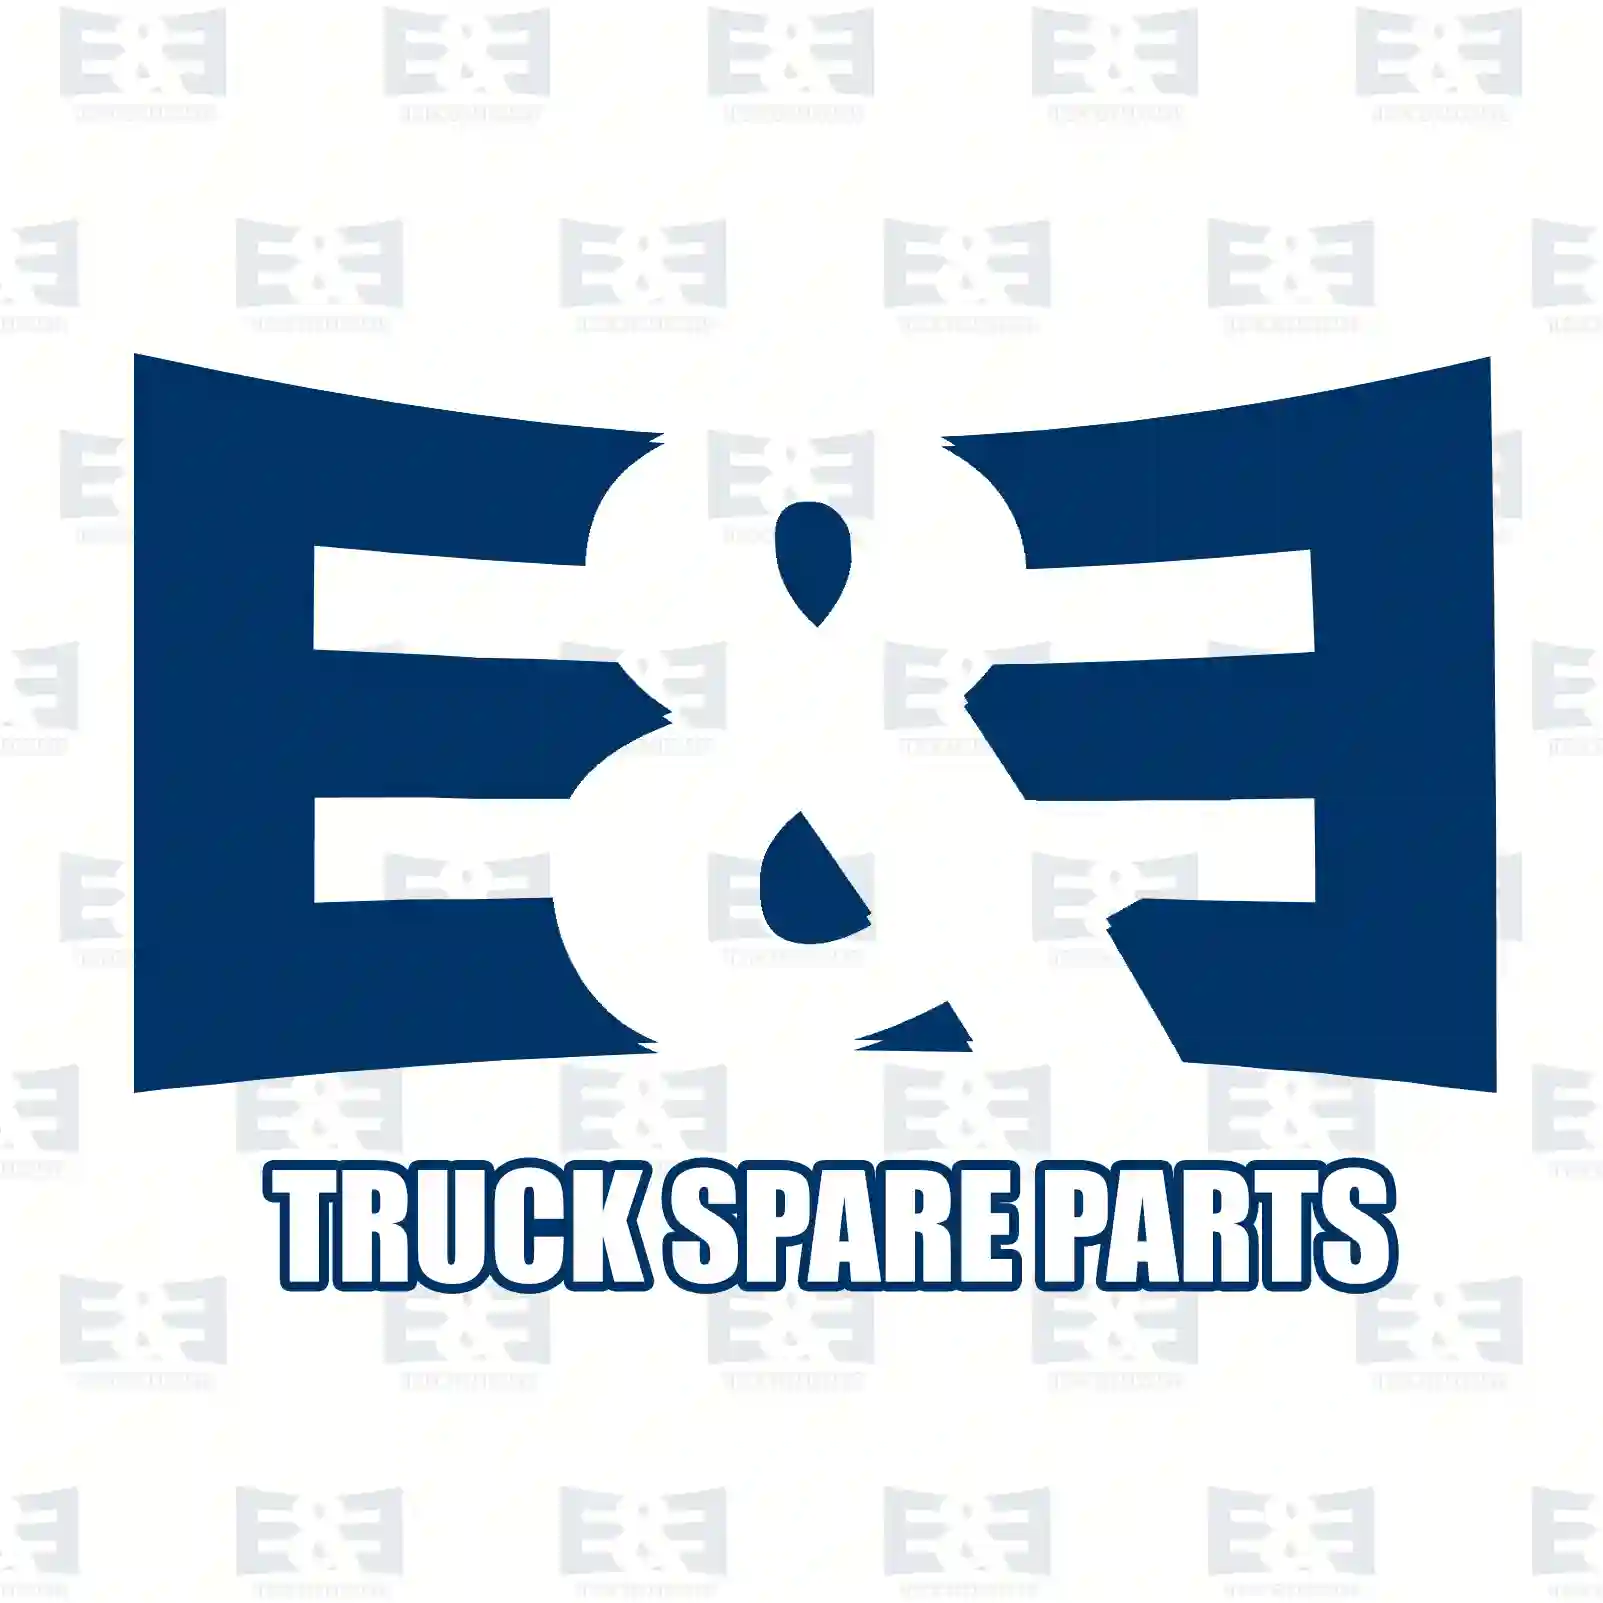 O-ring, 2E2285571, 7400466922, 466922, ZG02877-0008 ||  2E2285571 E&E Truck Spare Parts | Truck Spare Parts, Auotomotive Spare Parts O-ring, 2E2285571, 7400466922, 466922, ZG02877-0008 ||  2E2285571 E&E Truck Spare Parts | Truck Spare Parts, Auotomotive Spare Parts